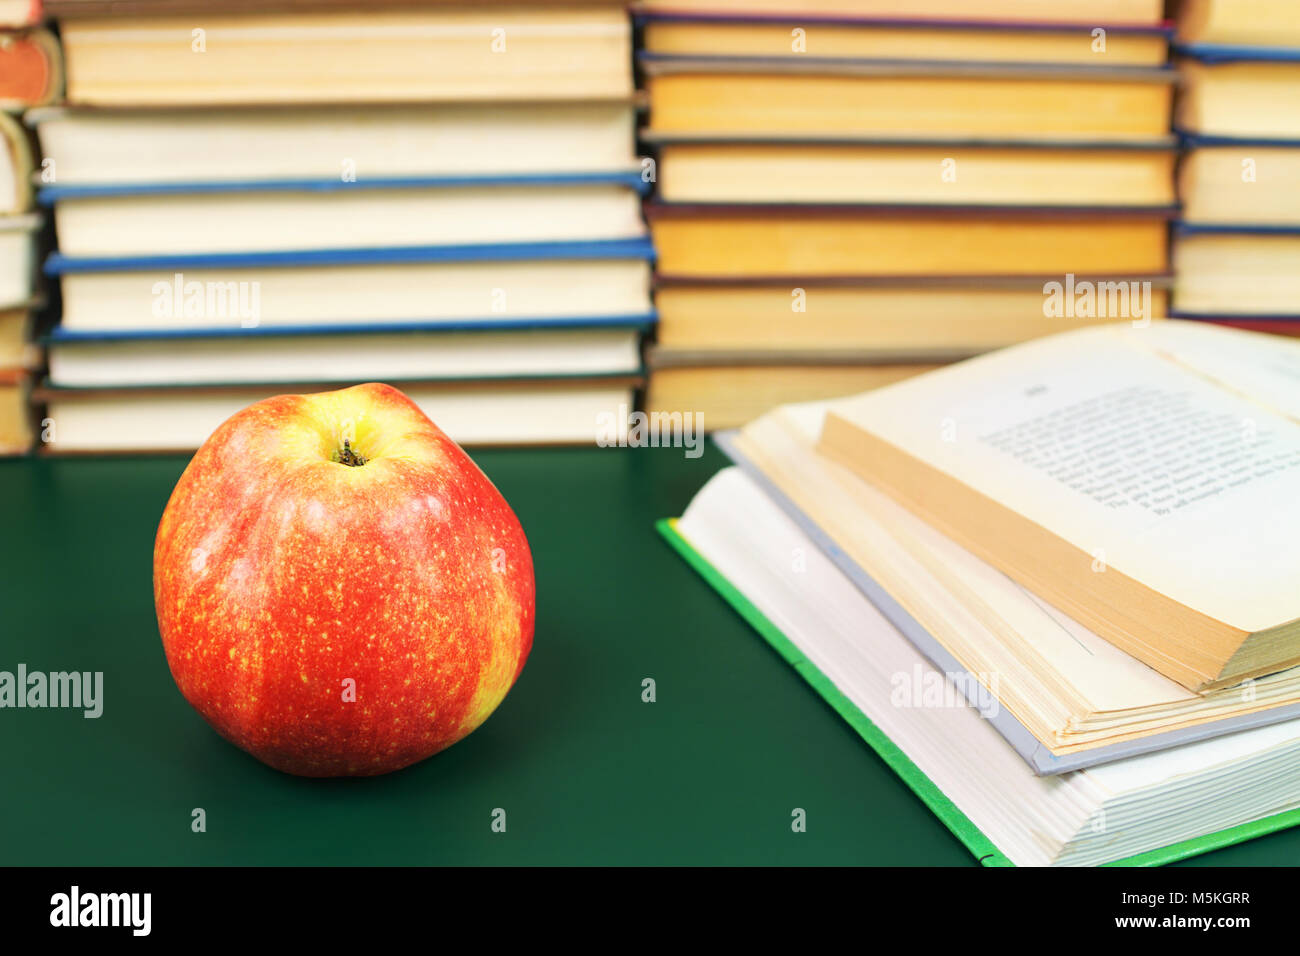 Roter Apfel auf dem grünen Tisch und öffnete Bücher vor dem Hintergrund Stapel Bücher Stockfoto